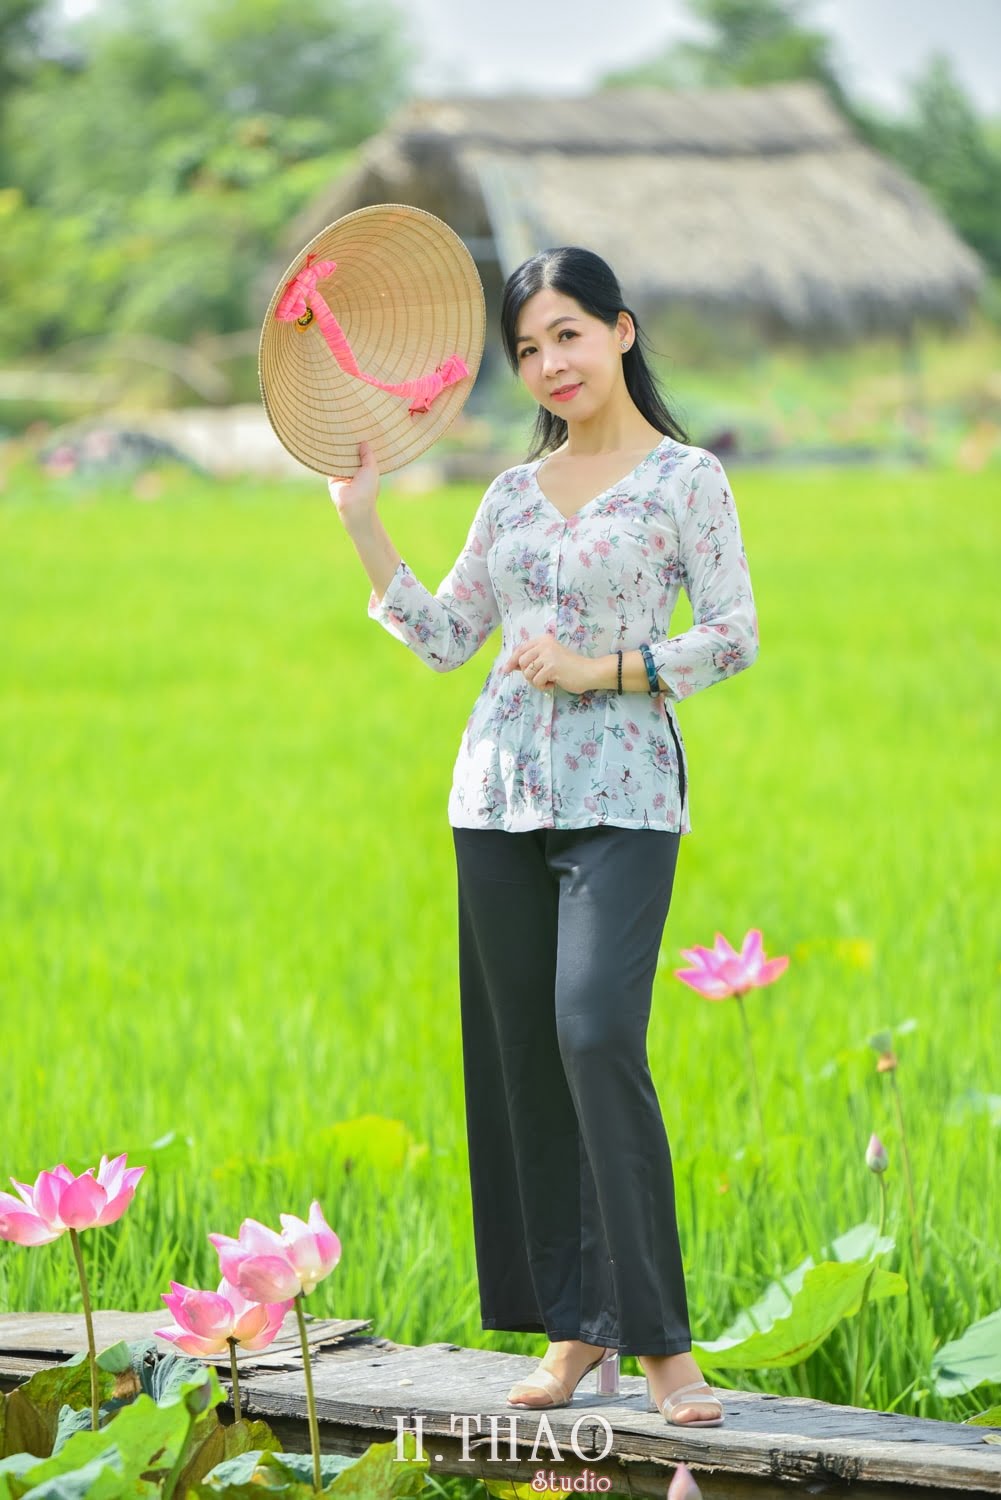 Anh Hoa sen 40 min - Tháng 6, chụp hình với hoa sen tại Tam đa quận 9 – Tp.HCM